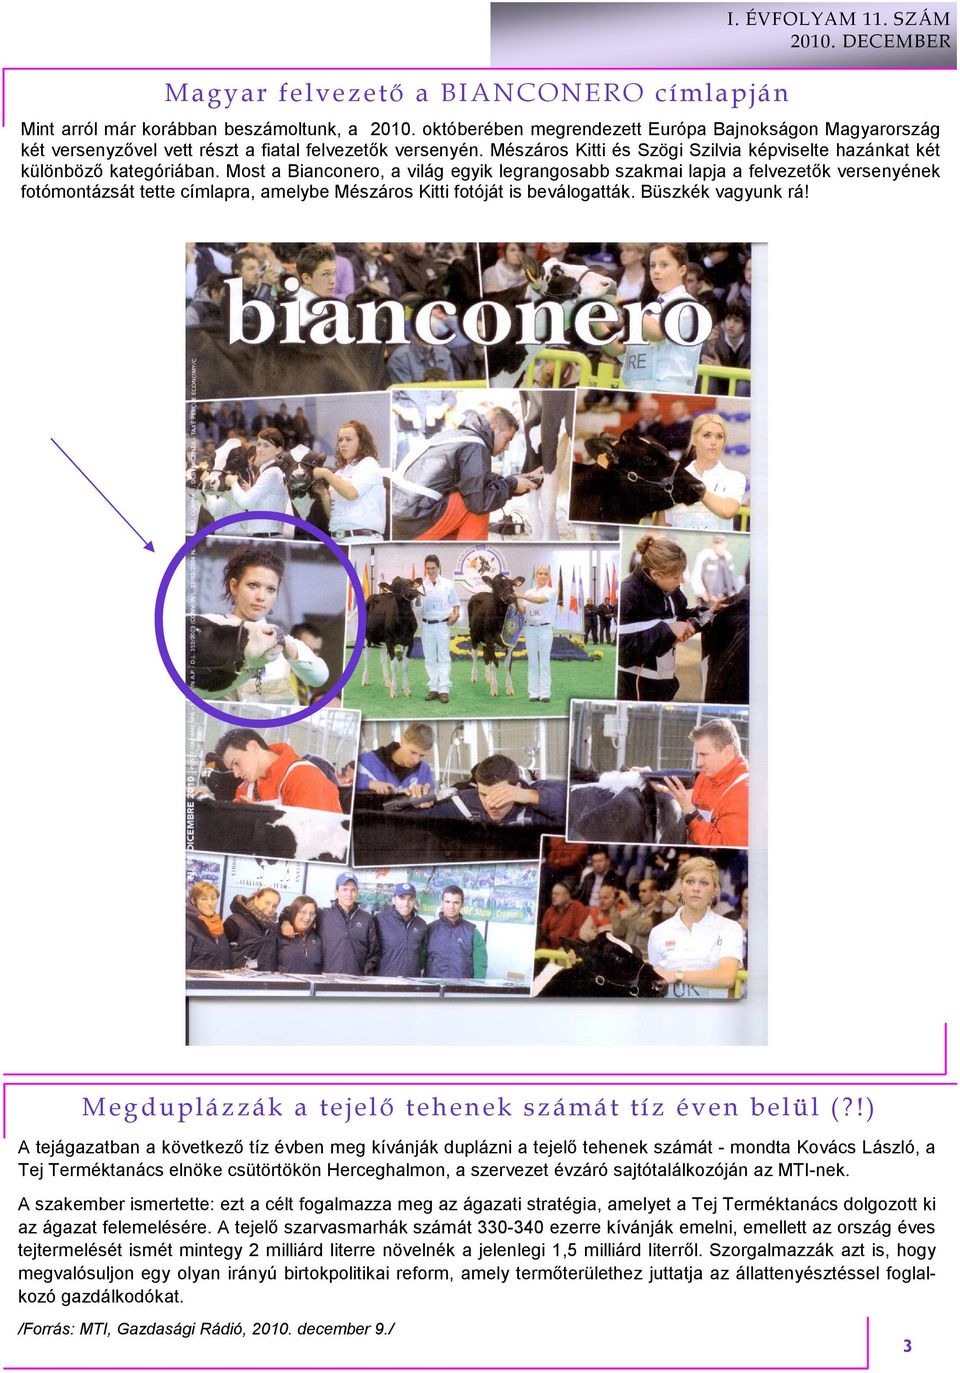 Most a Bianconero, a világ egyik legrangosabb szakmai lapja a felvezetık versenyének fotómontázsát tette címlapra, amelybe Mészáros Kitti fotóját is beválogatták. Büszkék vagyunk rá!